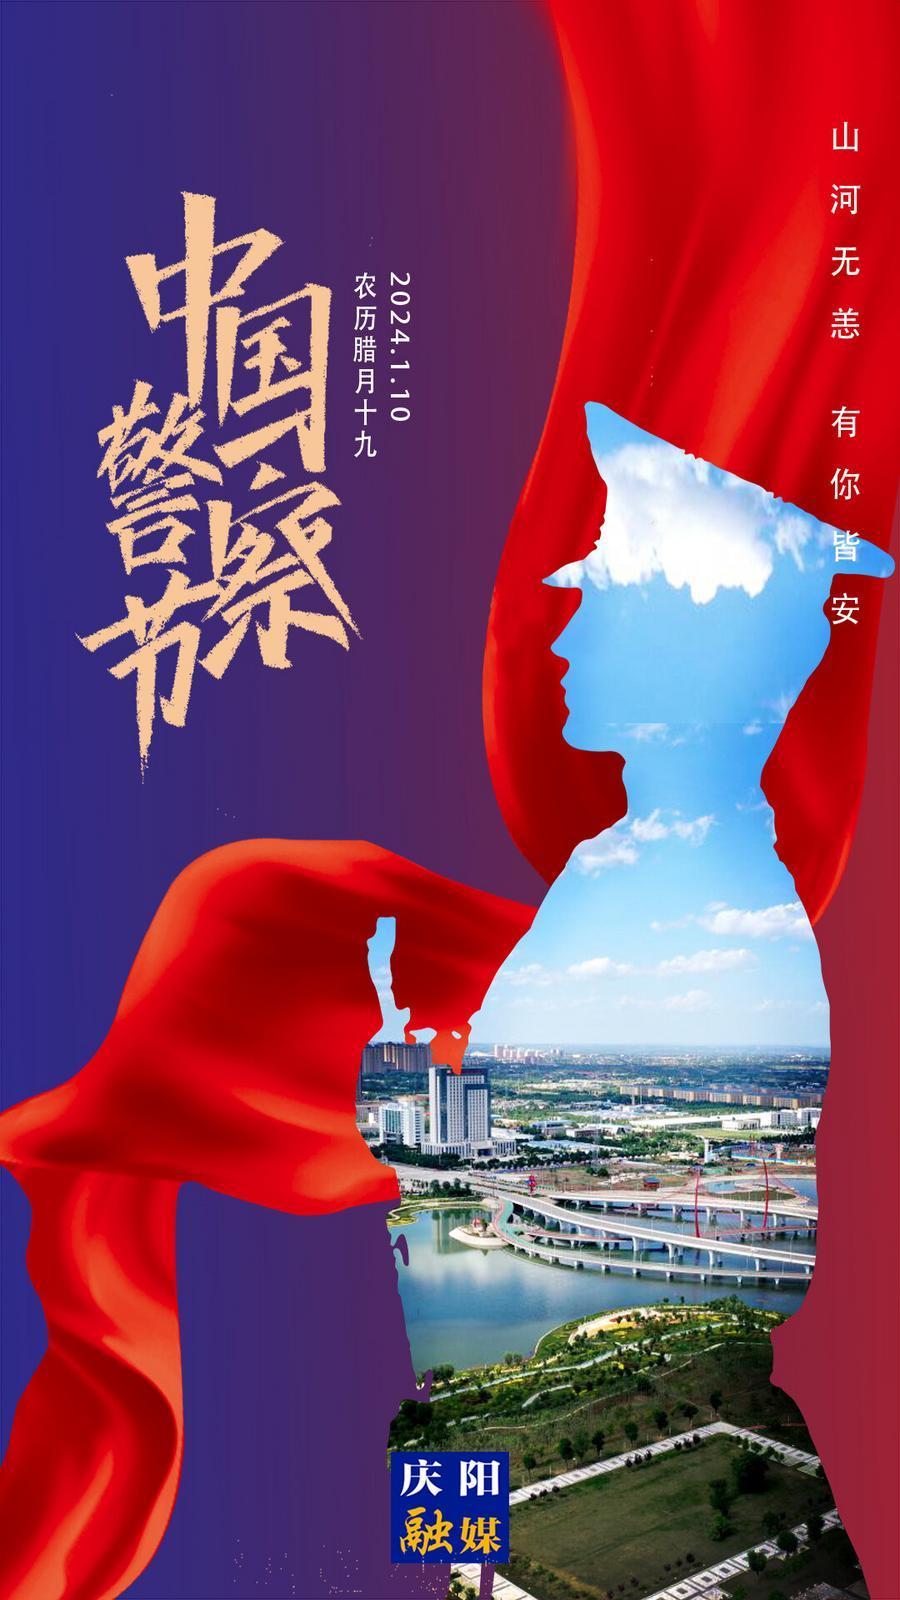 【微海報】中國人民警察節丨立警為公 執法為民